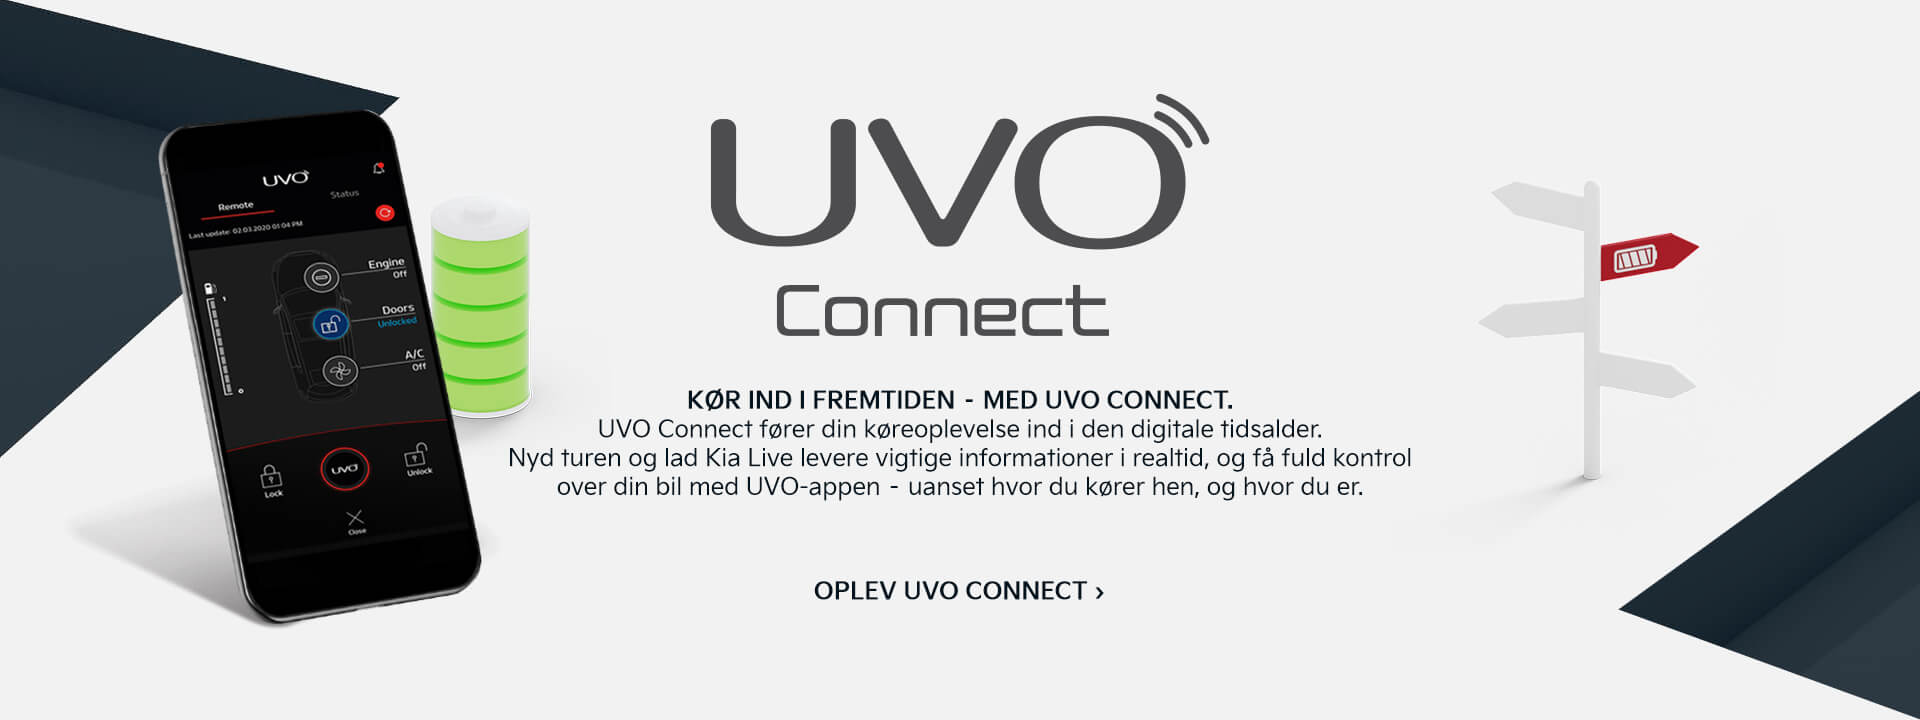 Kia UVO Connect – Kør ind i fremtiden.